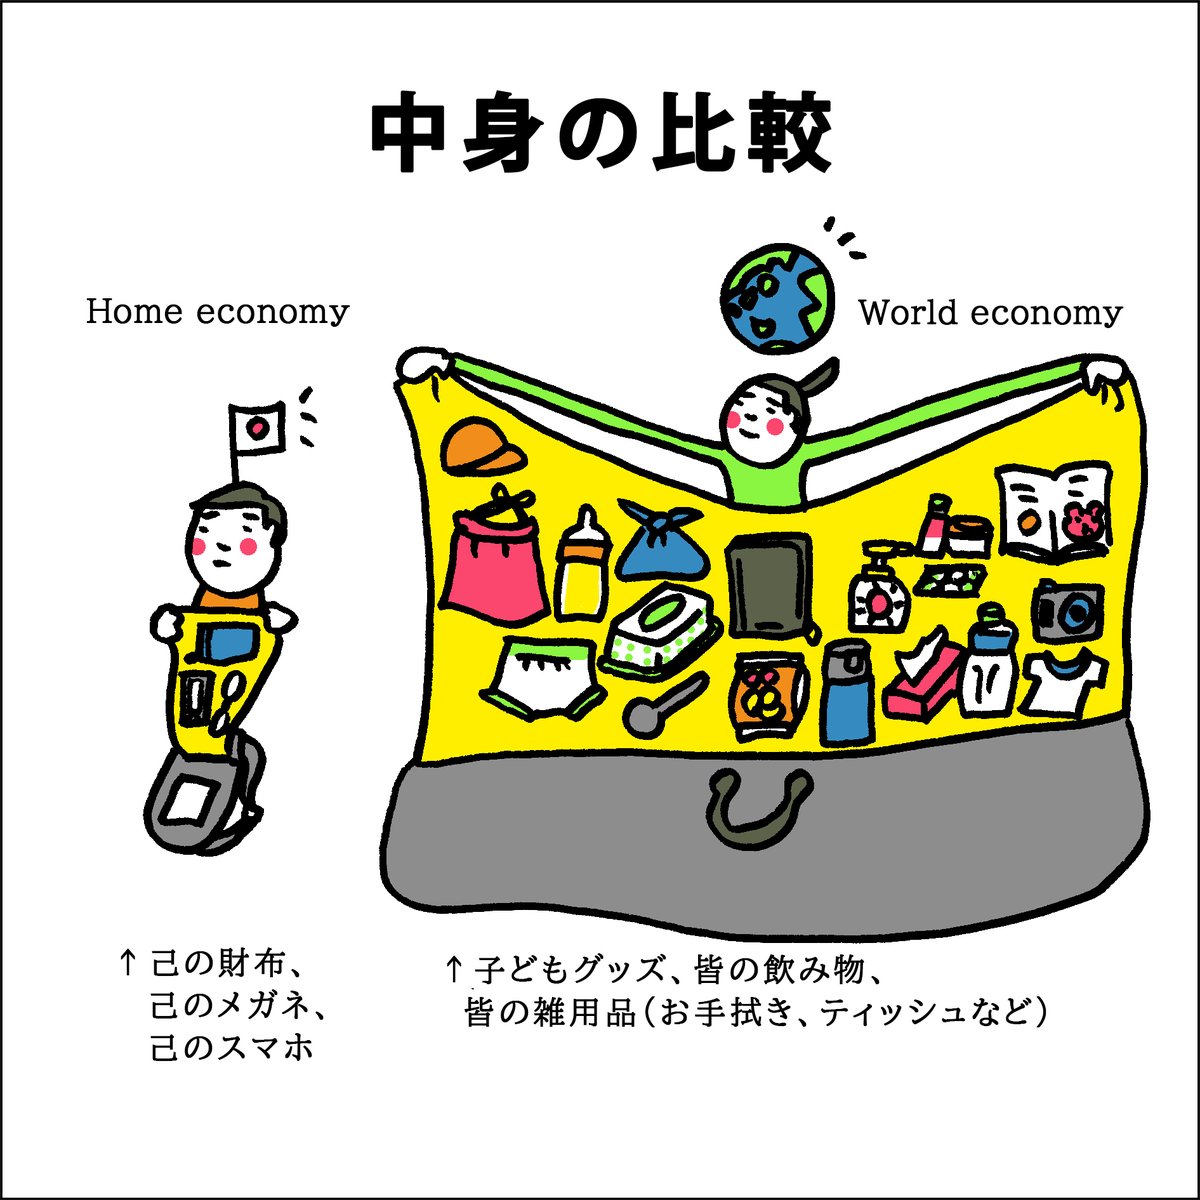 「『マザーズ』バッグ」ってちょっと限定的かも…。

パパのバッグは名前も特になく、あくまで「お父さんの持ち物入れ」。例えるならパパのバッグは自分に必要な「自国経済」だとすると、マザーズバッグは皆の持ち物が入った「世界経済」みたいな。→(続) 